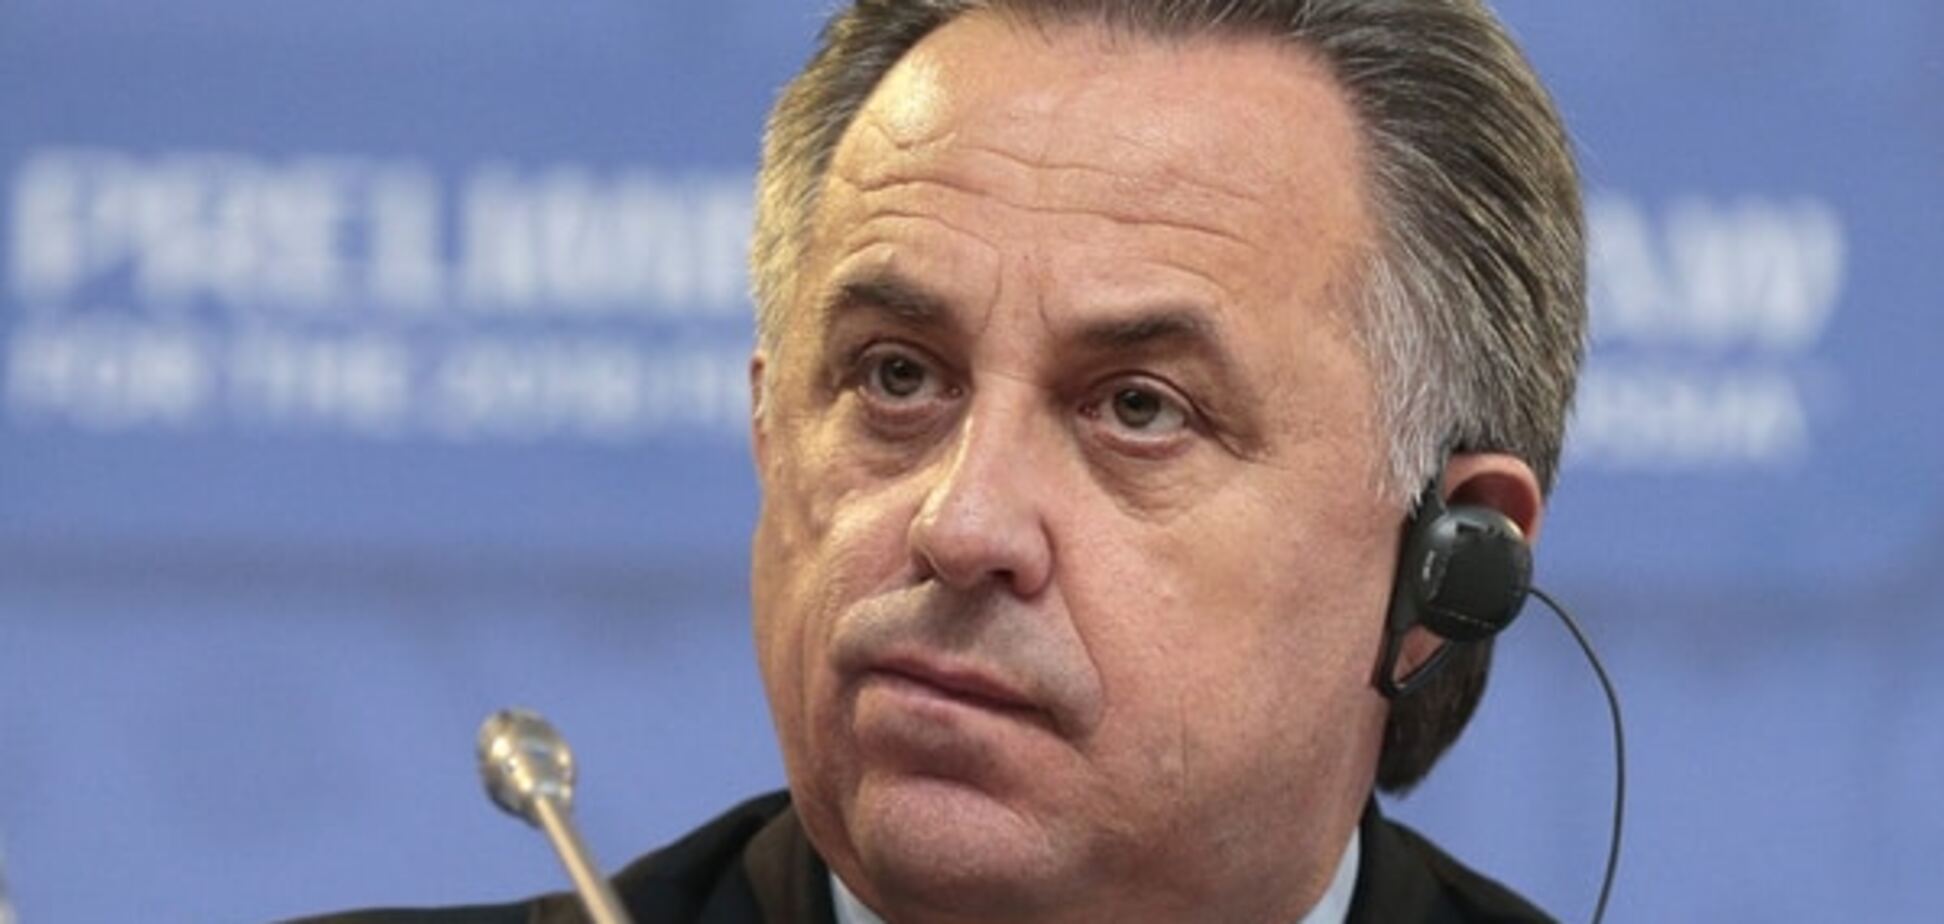 Налякав: міністр спорту Росії оголосив бойкот футболістам з Туреччини